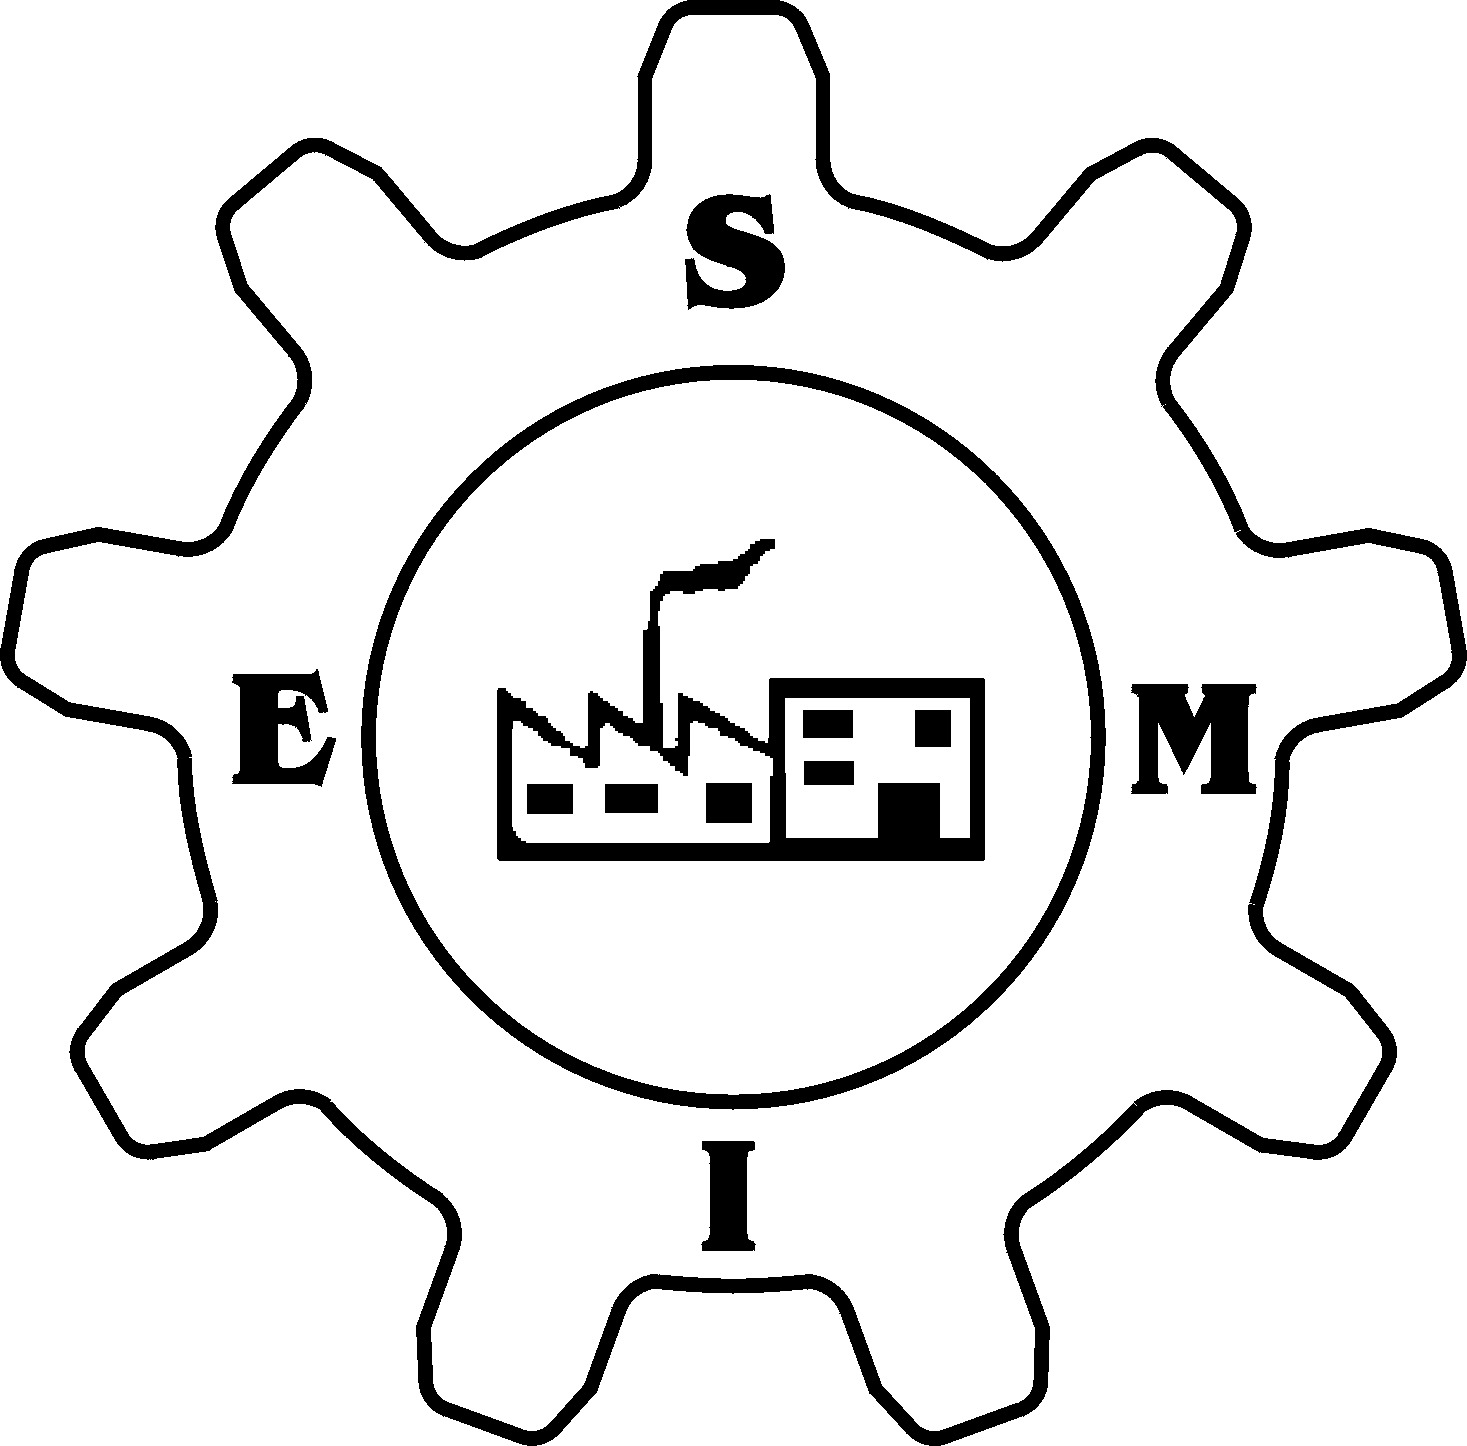 SMIE logo